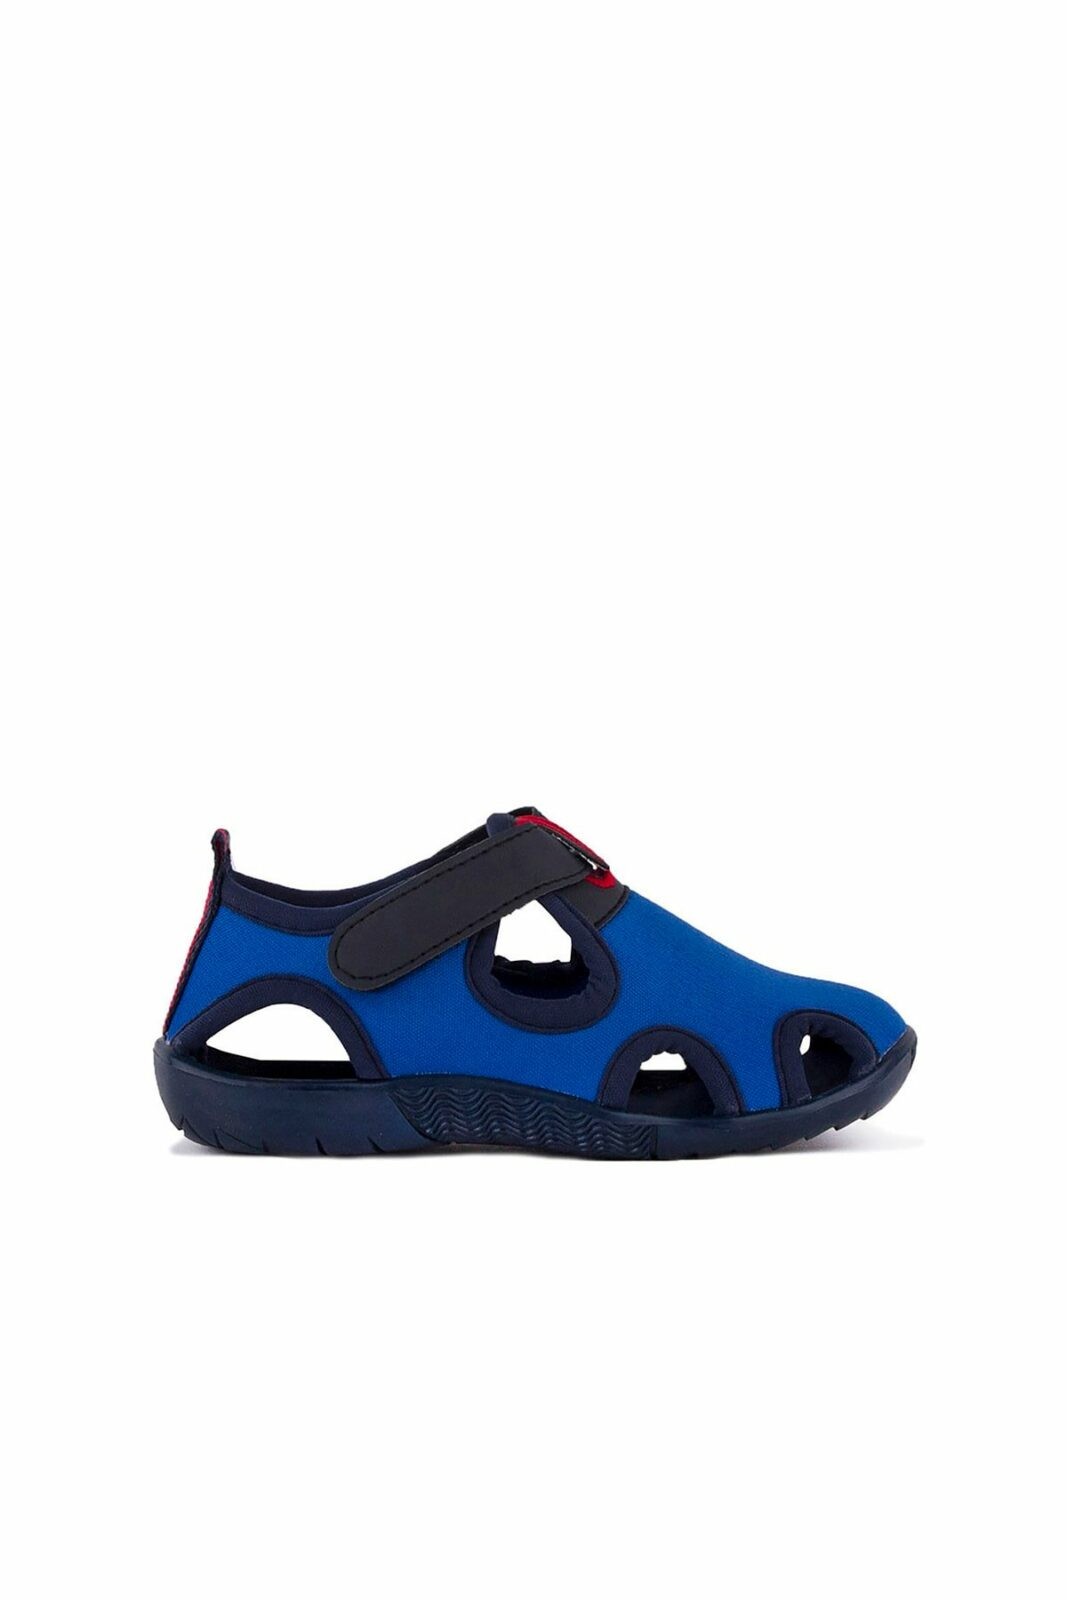 Slazenger Sandals - Blue